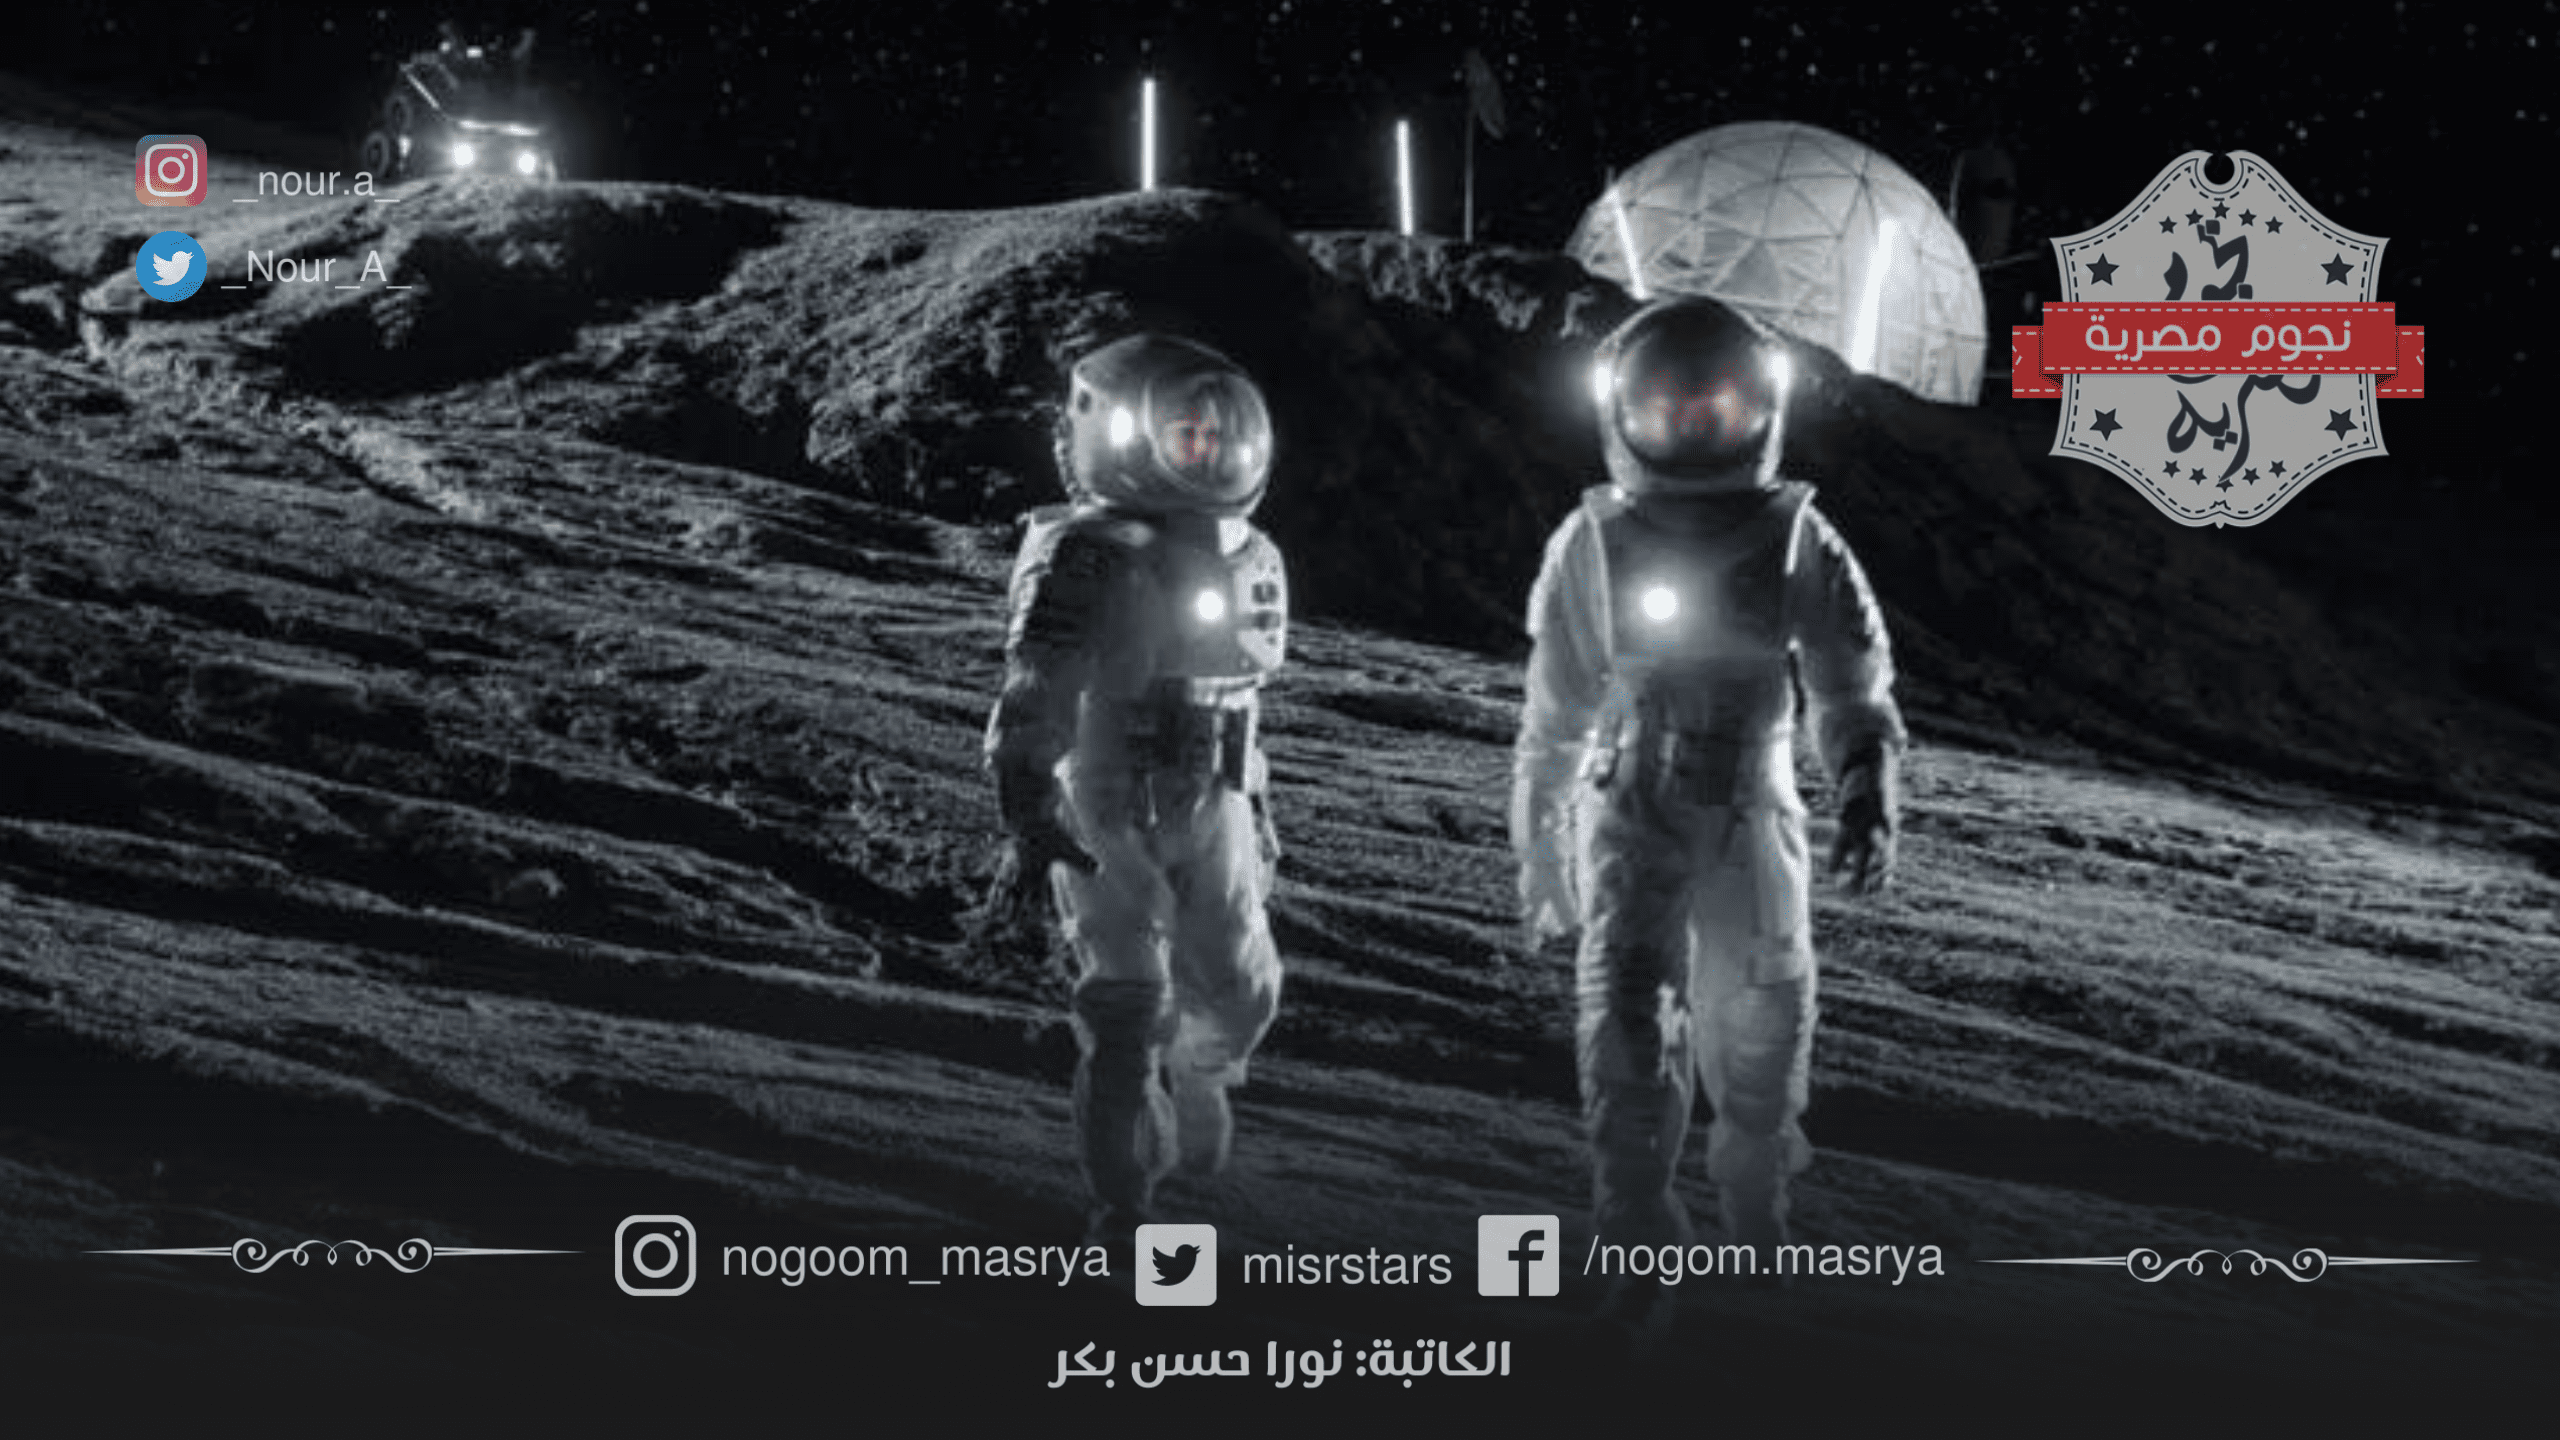 رائدين فضاء على سطح القمر - مصدر الصورة: موقع BBC